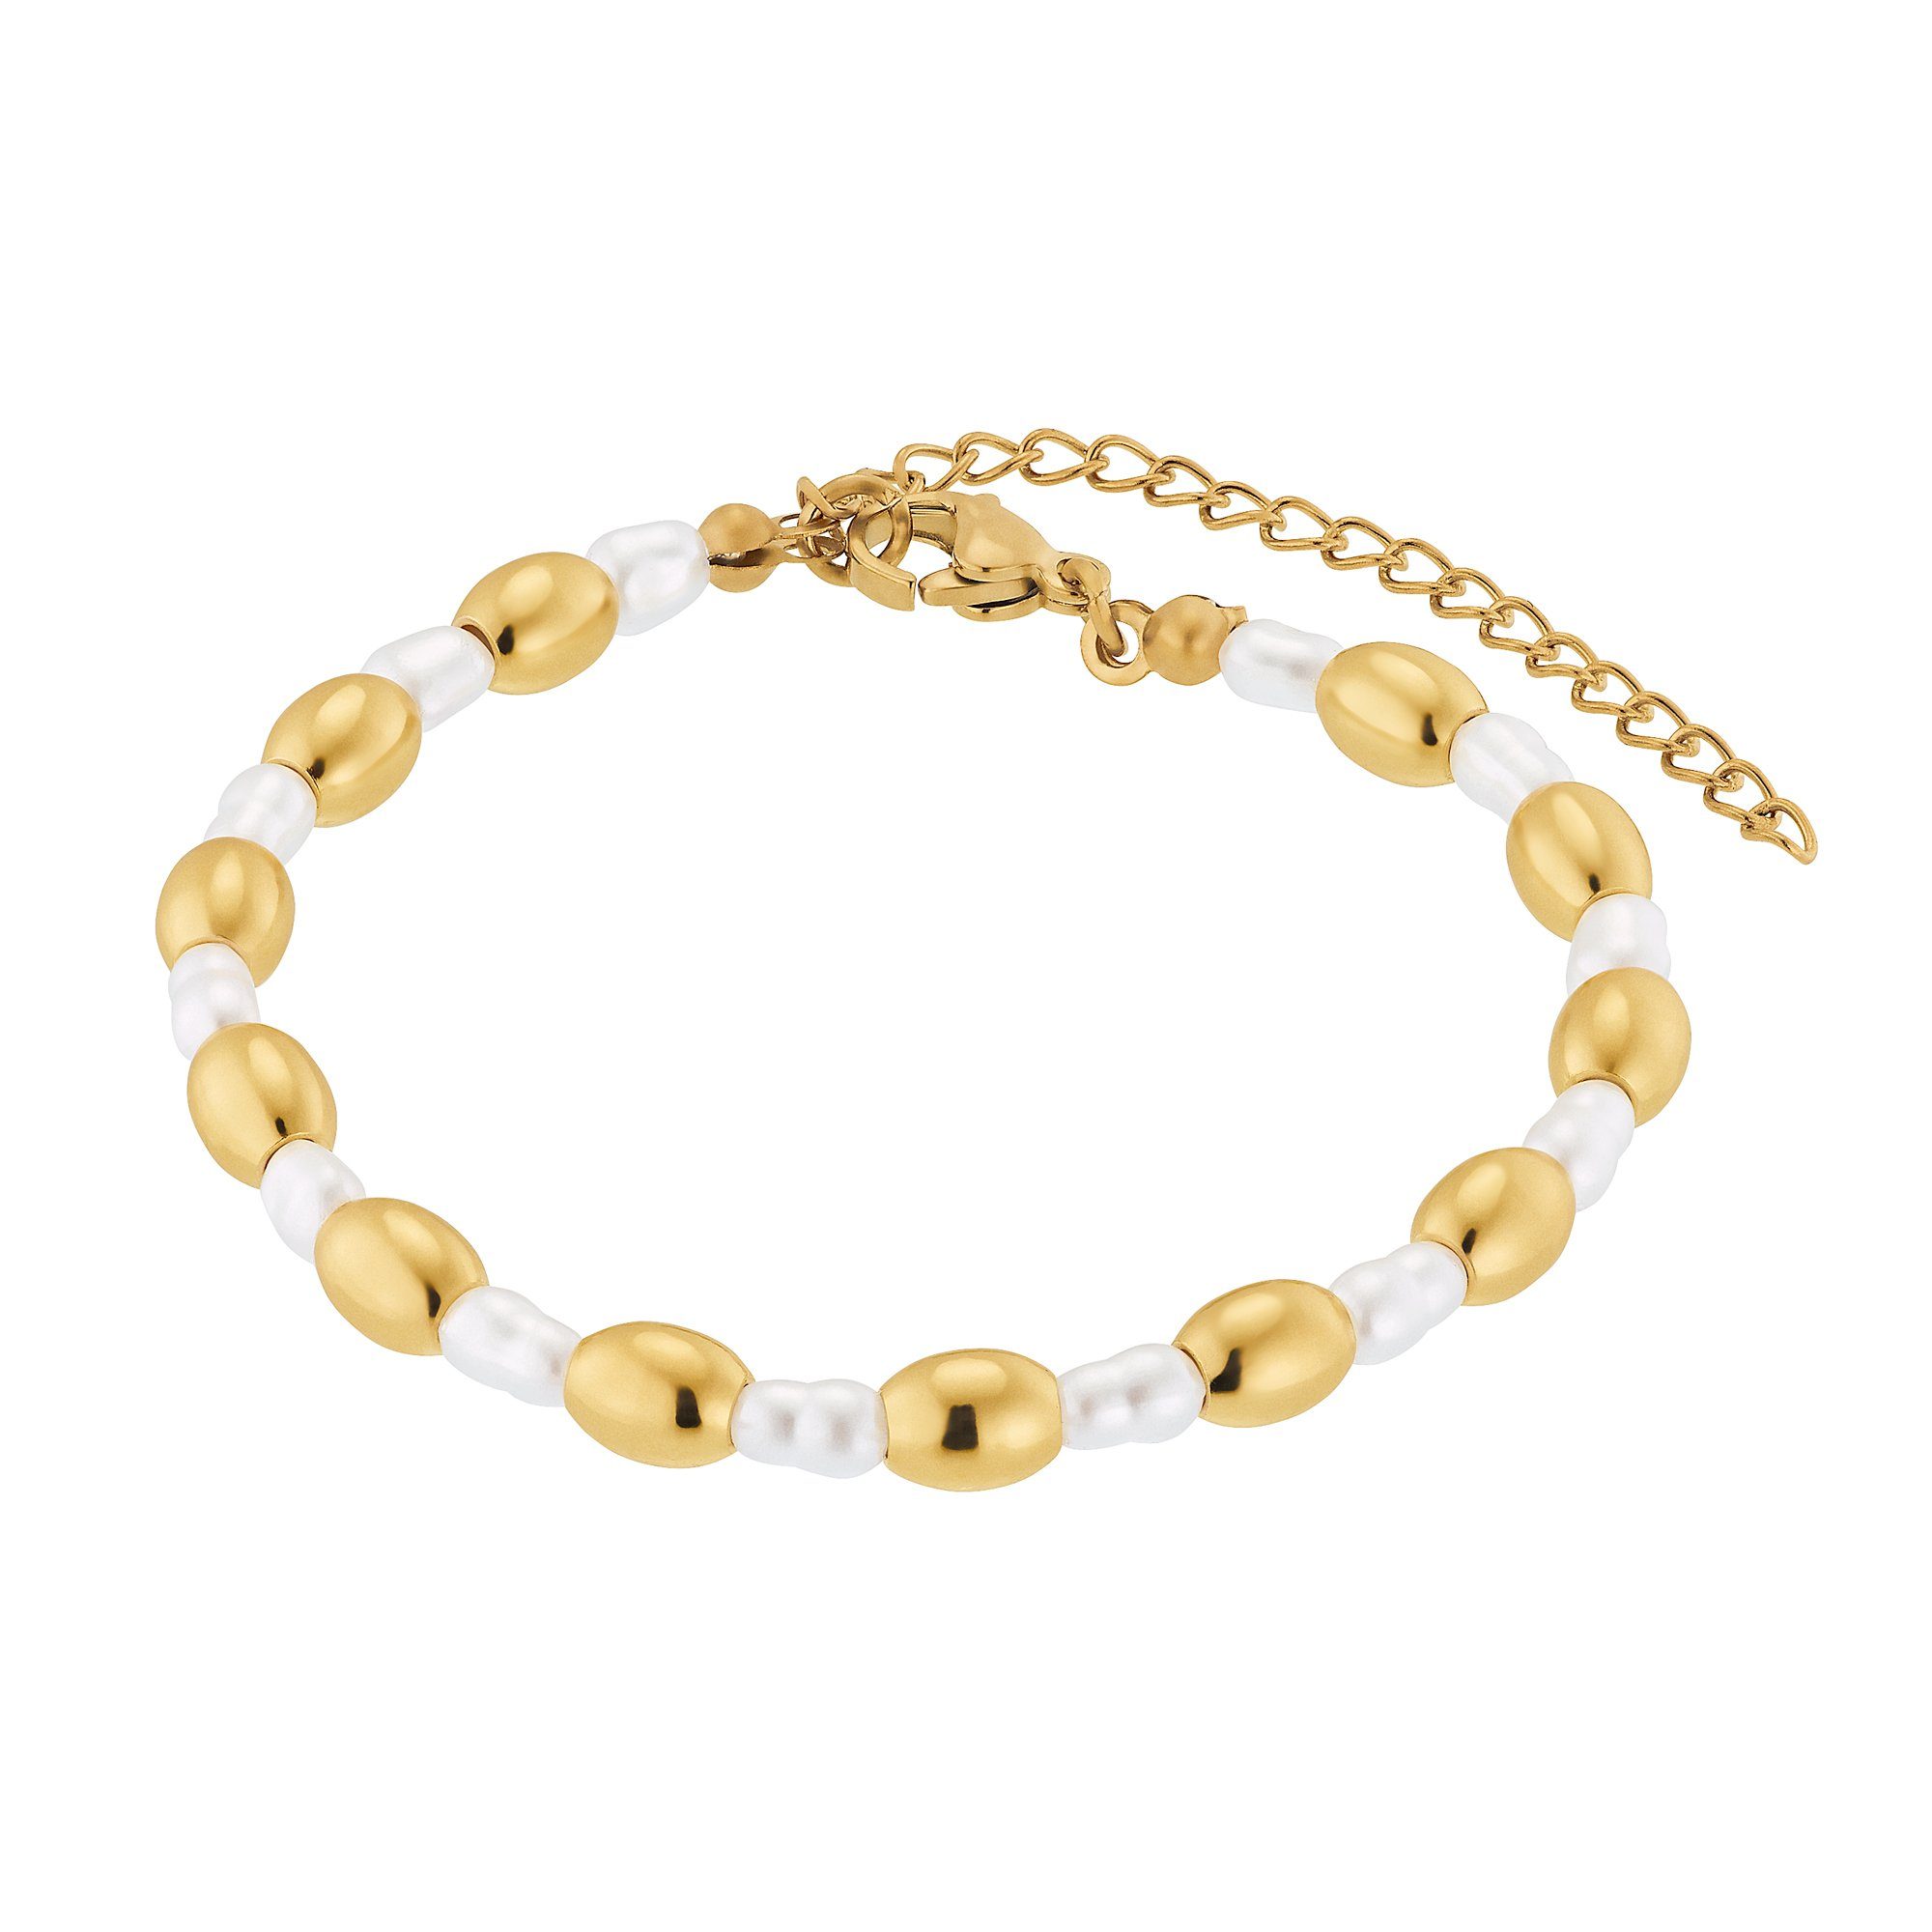 Heideman Armband Maya silberfarben poliert (Armband, inkl. Geschenkverpackung), Armkette für Frauen mit Perle goldfarben